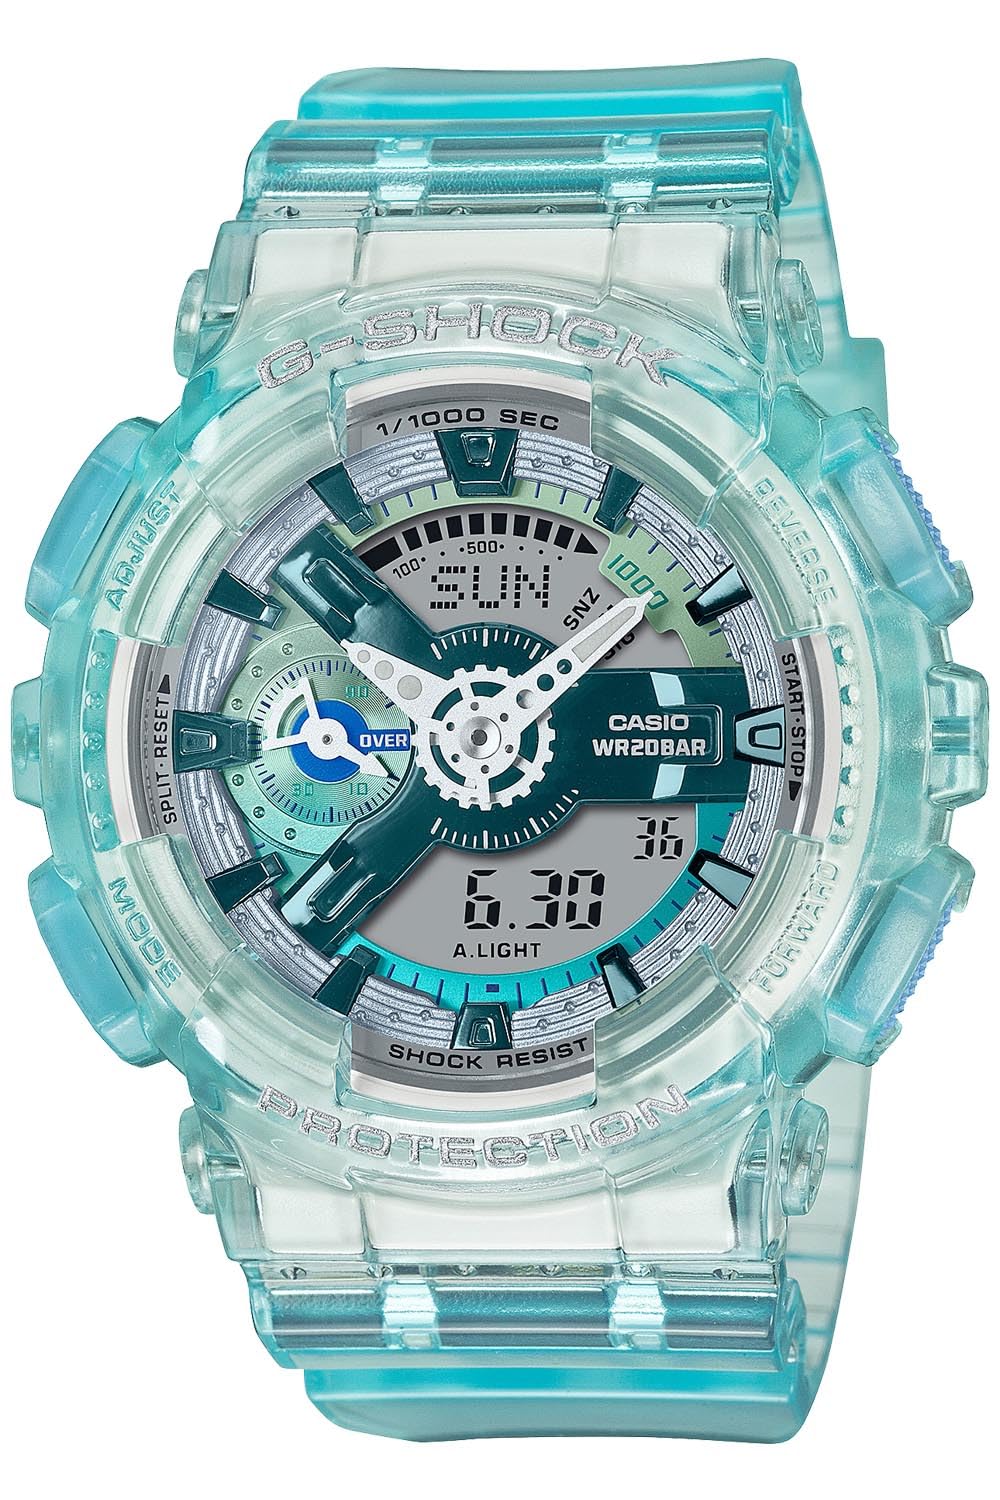 ジーショック [カシオ] 腕時計 【国内正規品】web限定 GMA-S110VW-2AJF レディース ブルーグリーン - BanzaiHobby